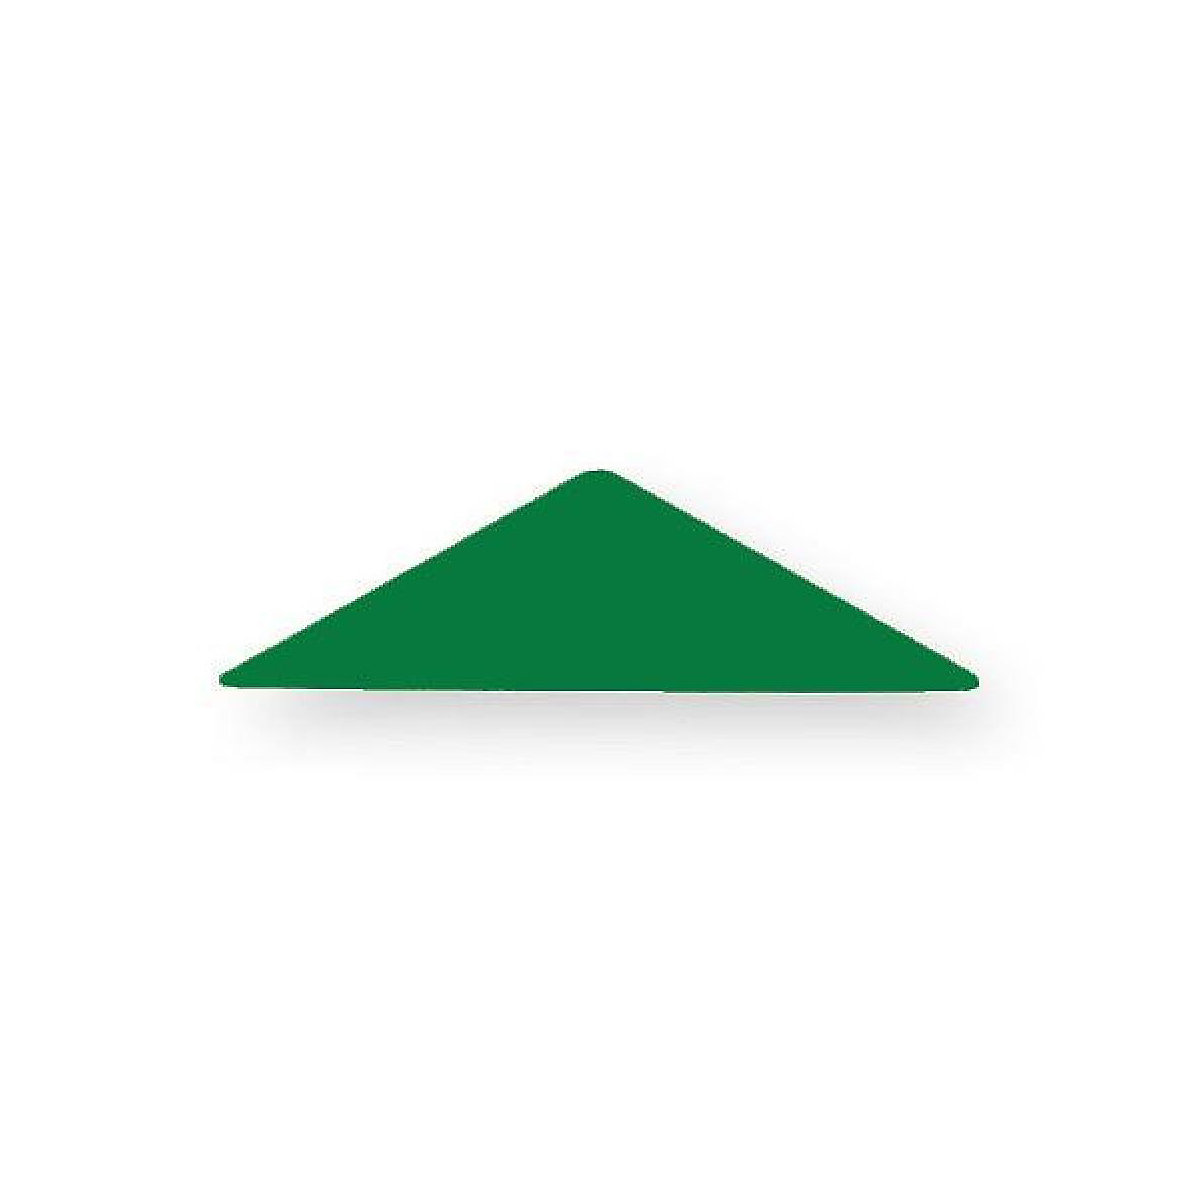 SINA®SPIELZEUG Holzspielzeug Legematerial Stumpfw. gleichschenkliges Dreieck Grün 500 Stück